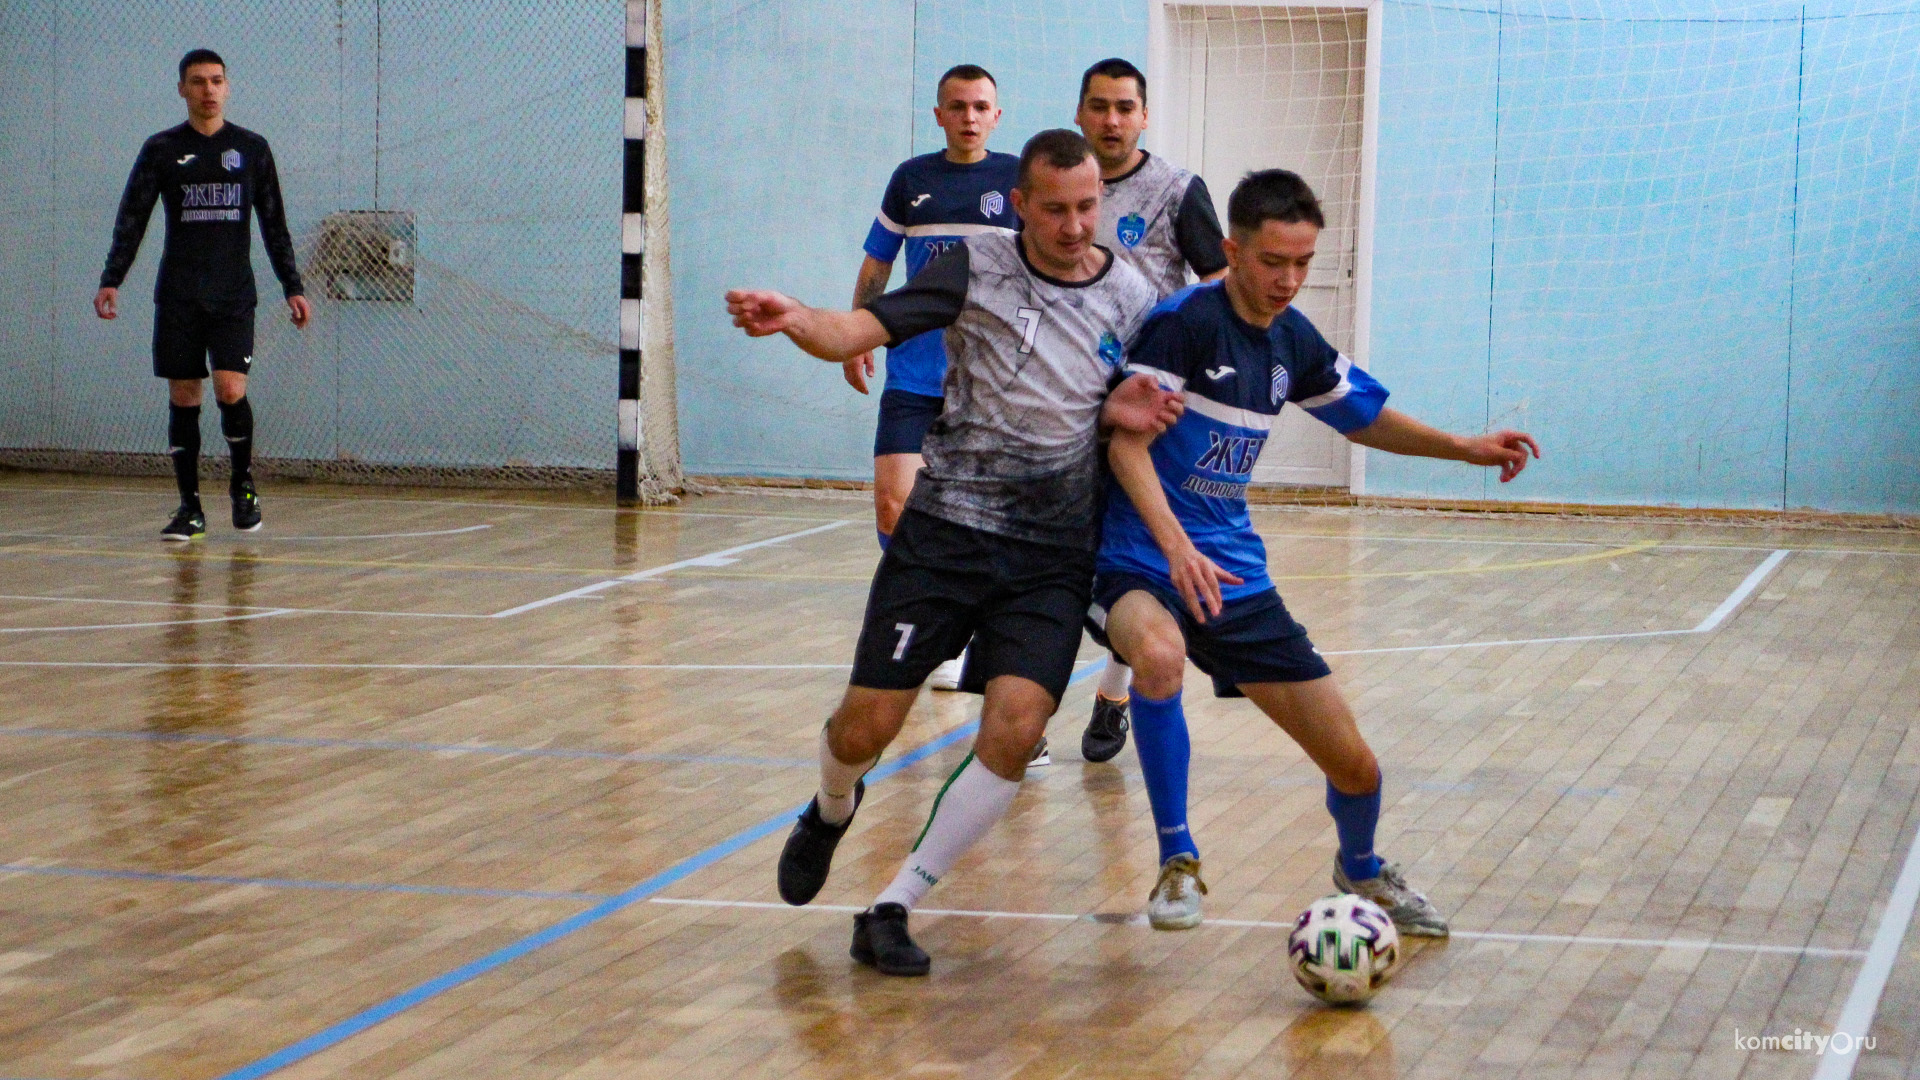 Команда из Комсомольска-на-Амуре завоевала третье место в розыгрыше кубка по-мини футболу в Амурске 